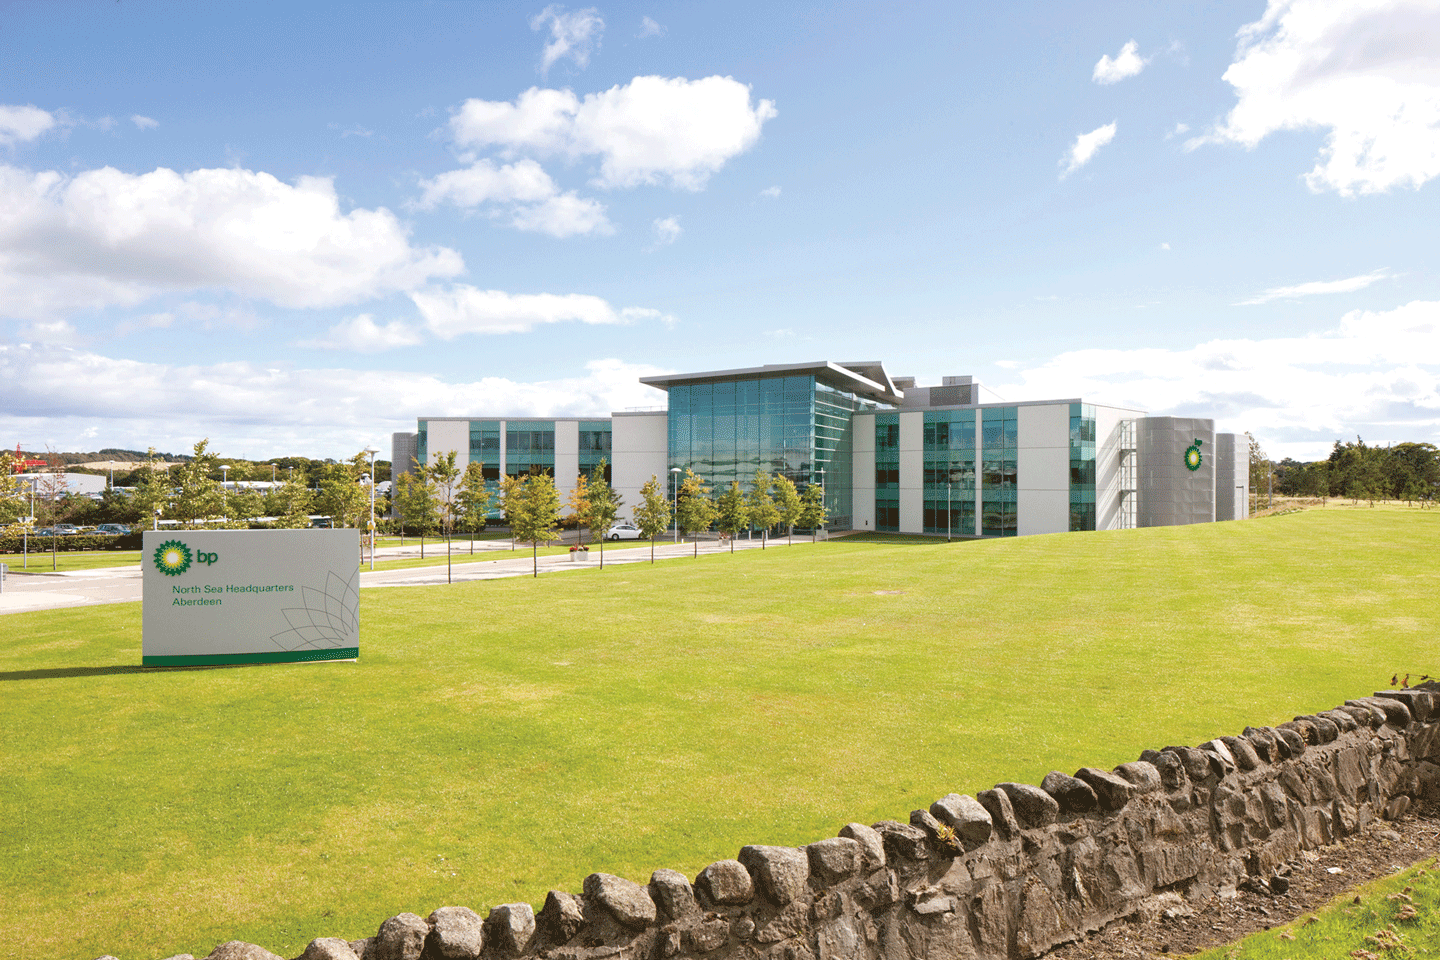 BP Headquarters, Aberdeen